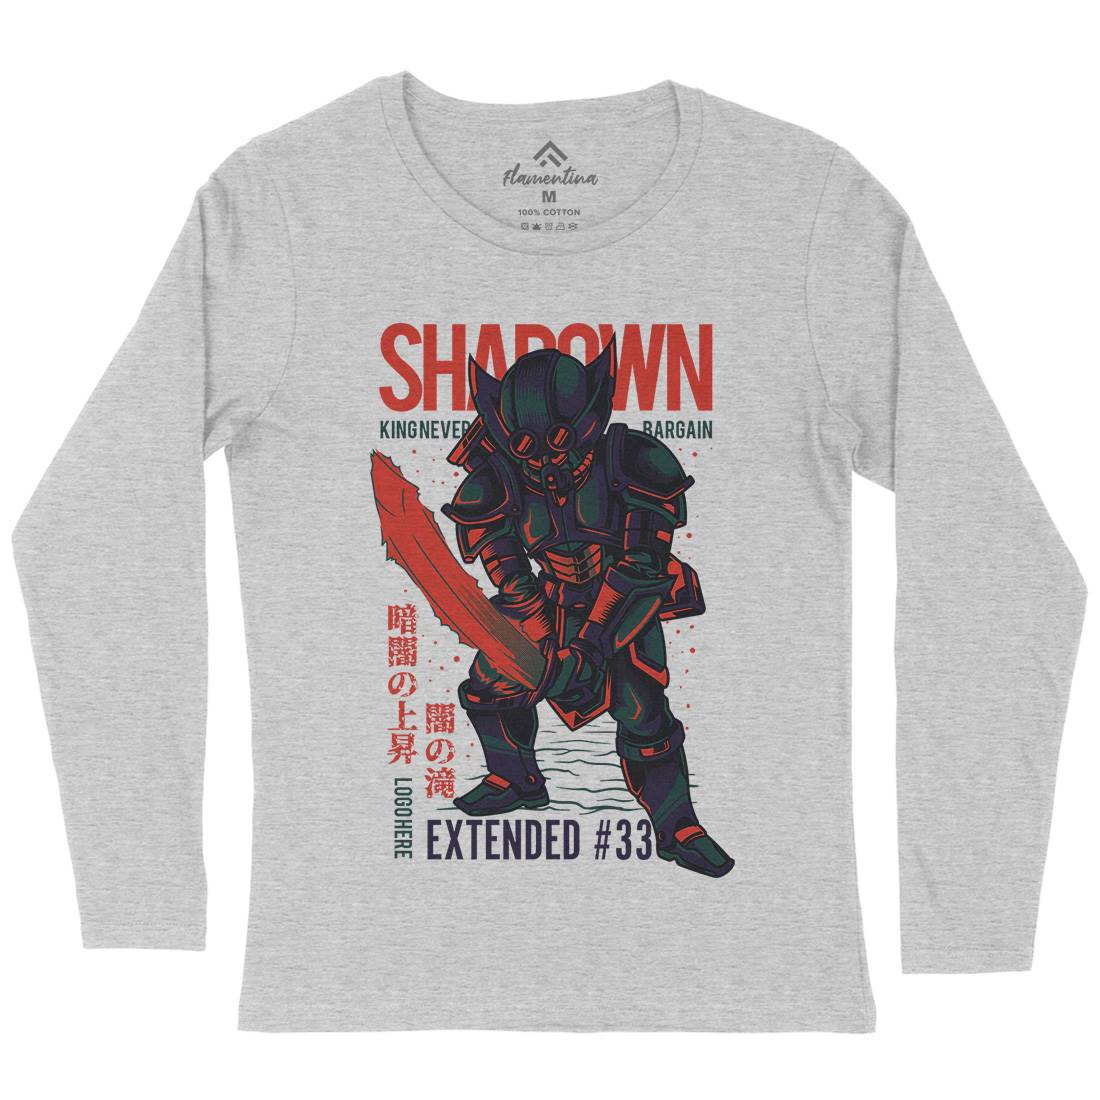 Shadown Knight Womens Long Sleeve T-Shirt Warriors D812